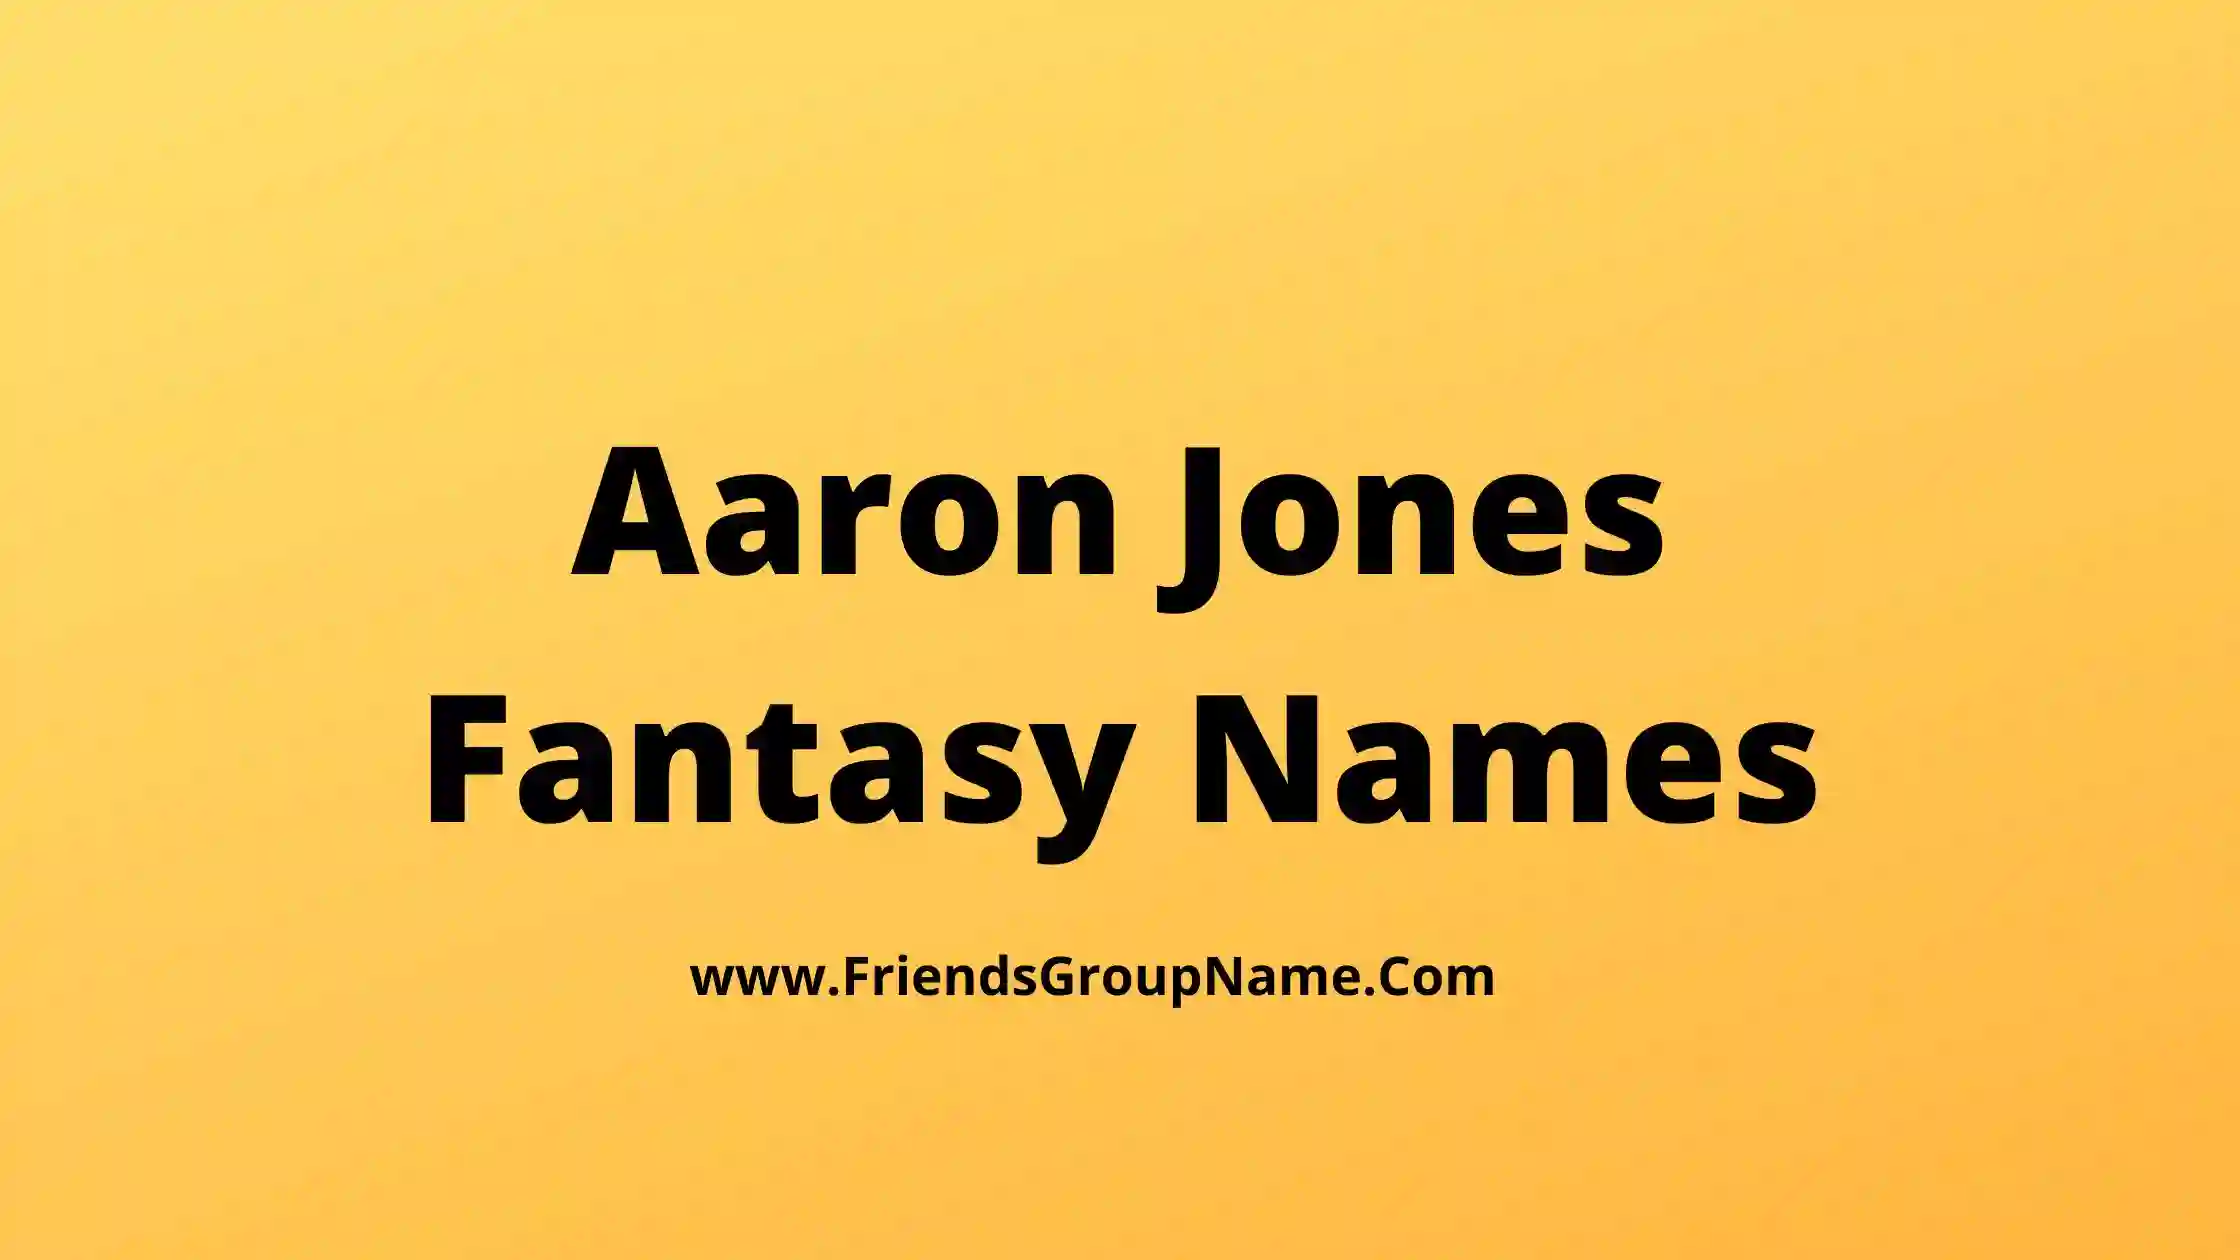 Aaron Jones Fantasy Names